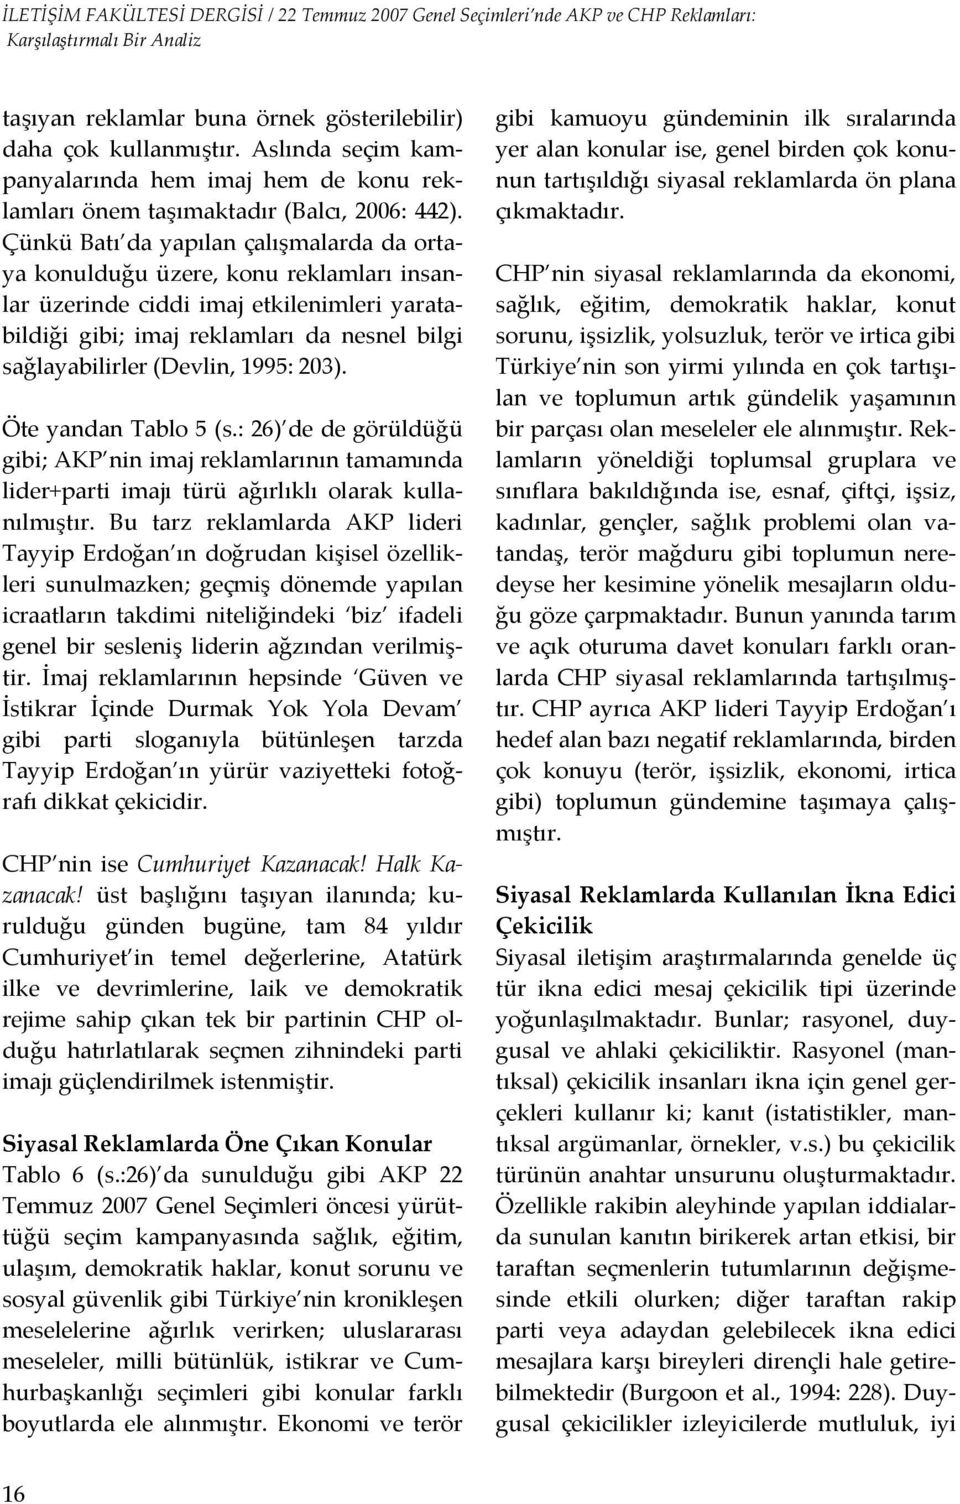 1995: 203). Öte yandan Tablo 5 (s.: 26) de de görüldüğü gibi; AKP nin imaj reklamlarının tamamında lider+parti imajı türü ağırlıklı olarak kullanılmıştır.